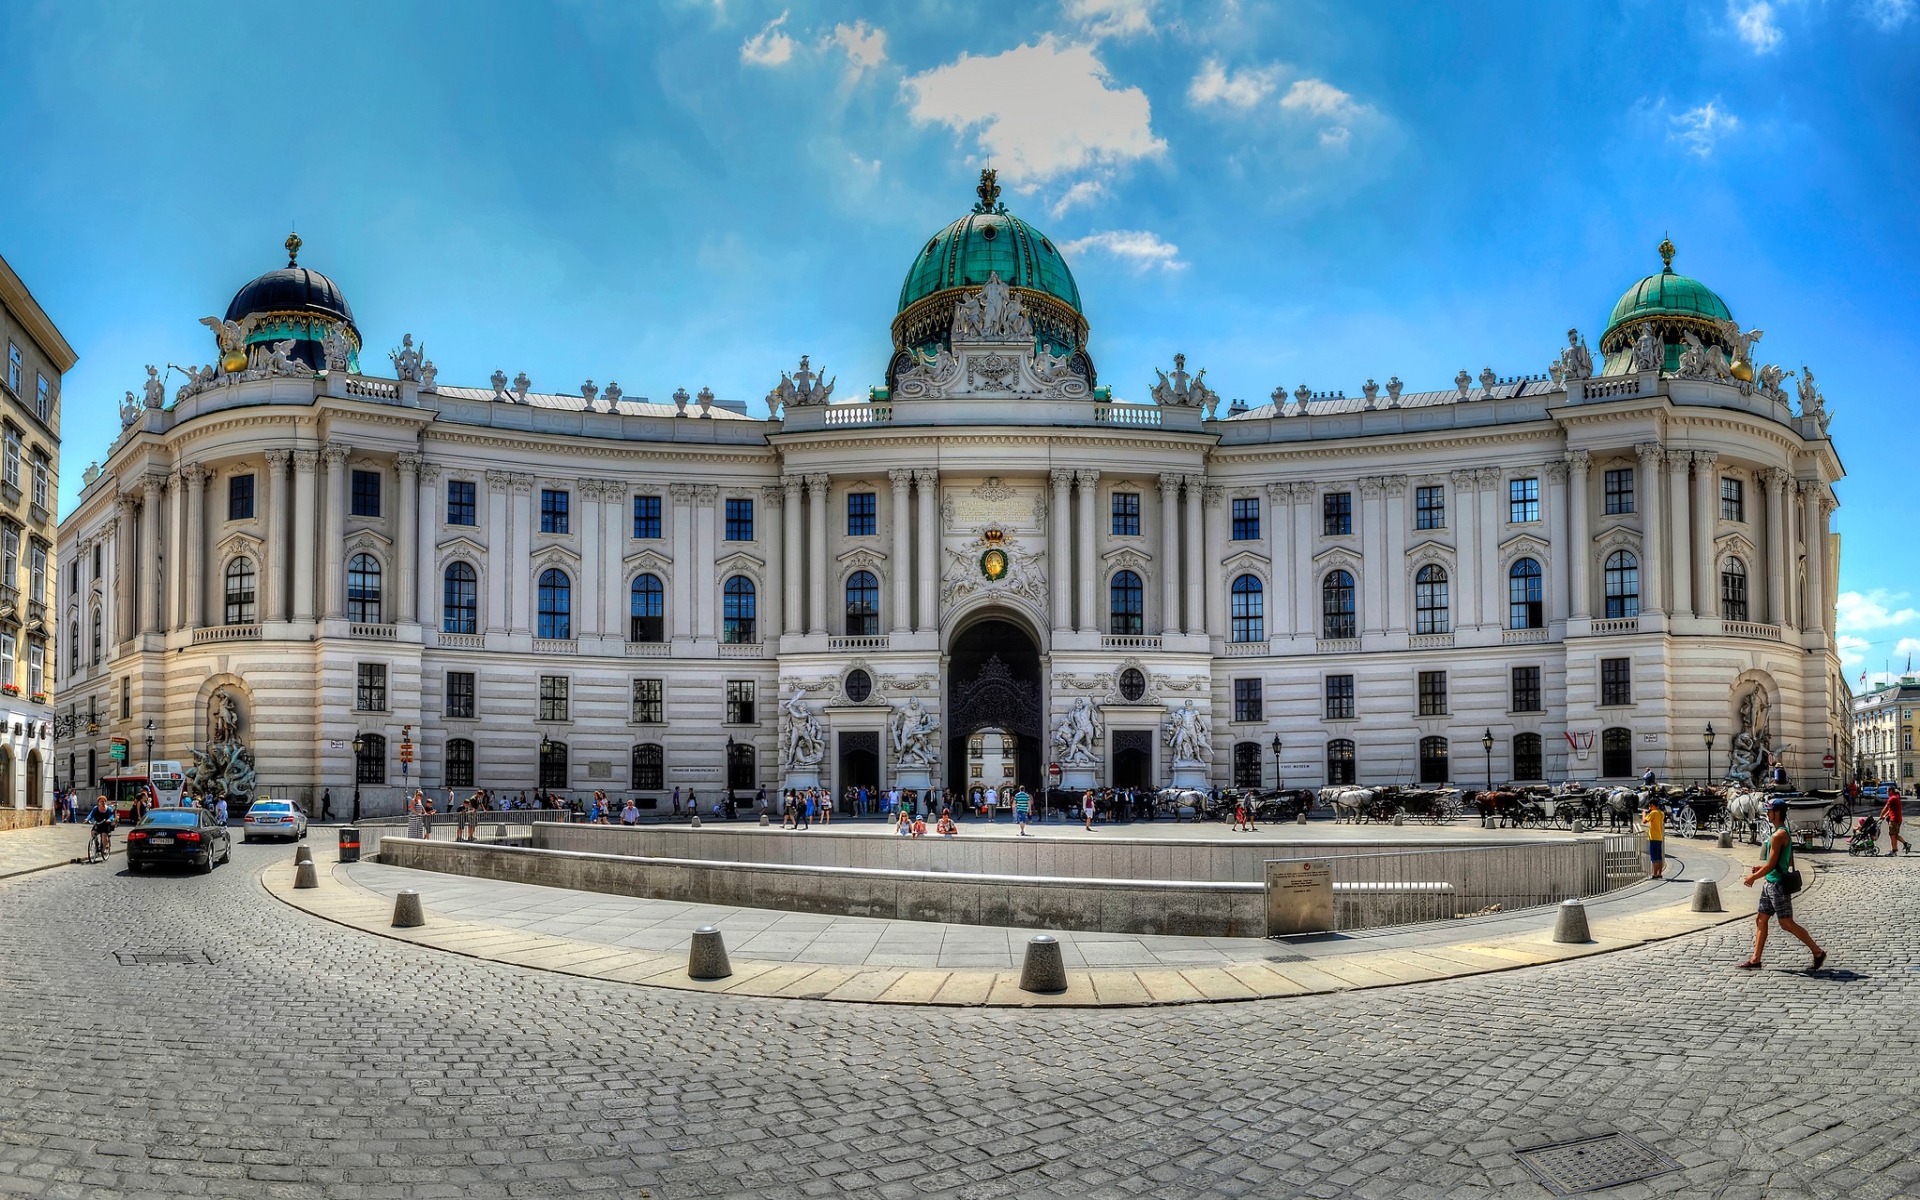 Cung điện Hofburg nằm ngay trung tâm thành phố